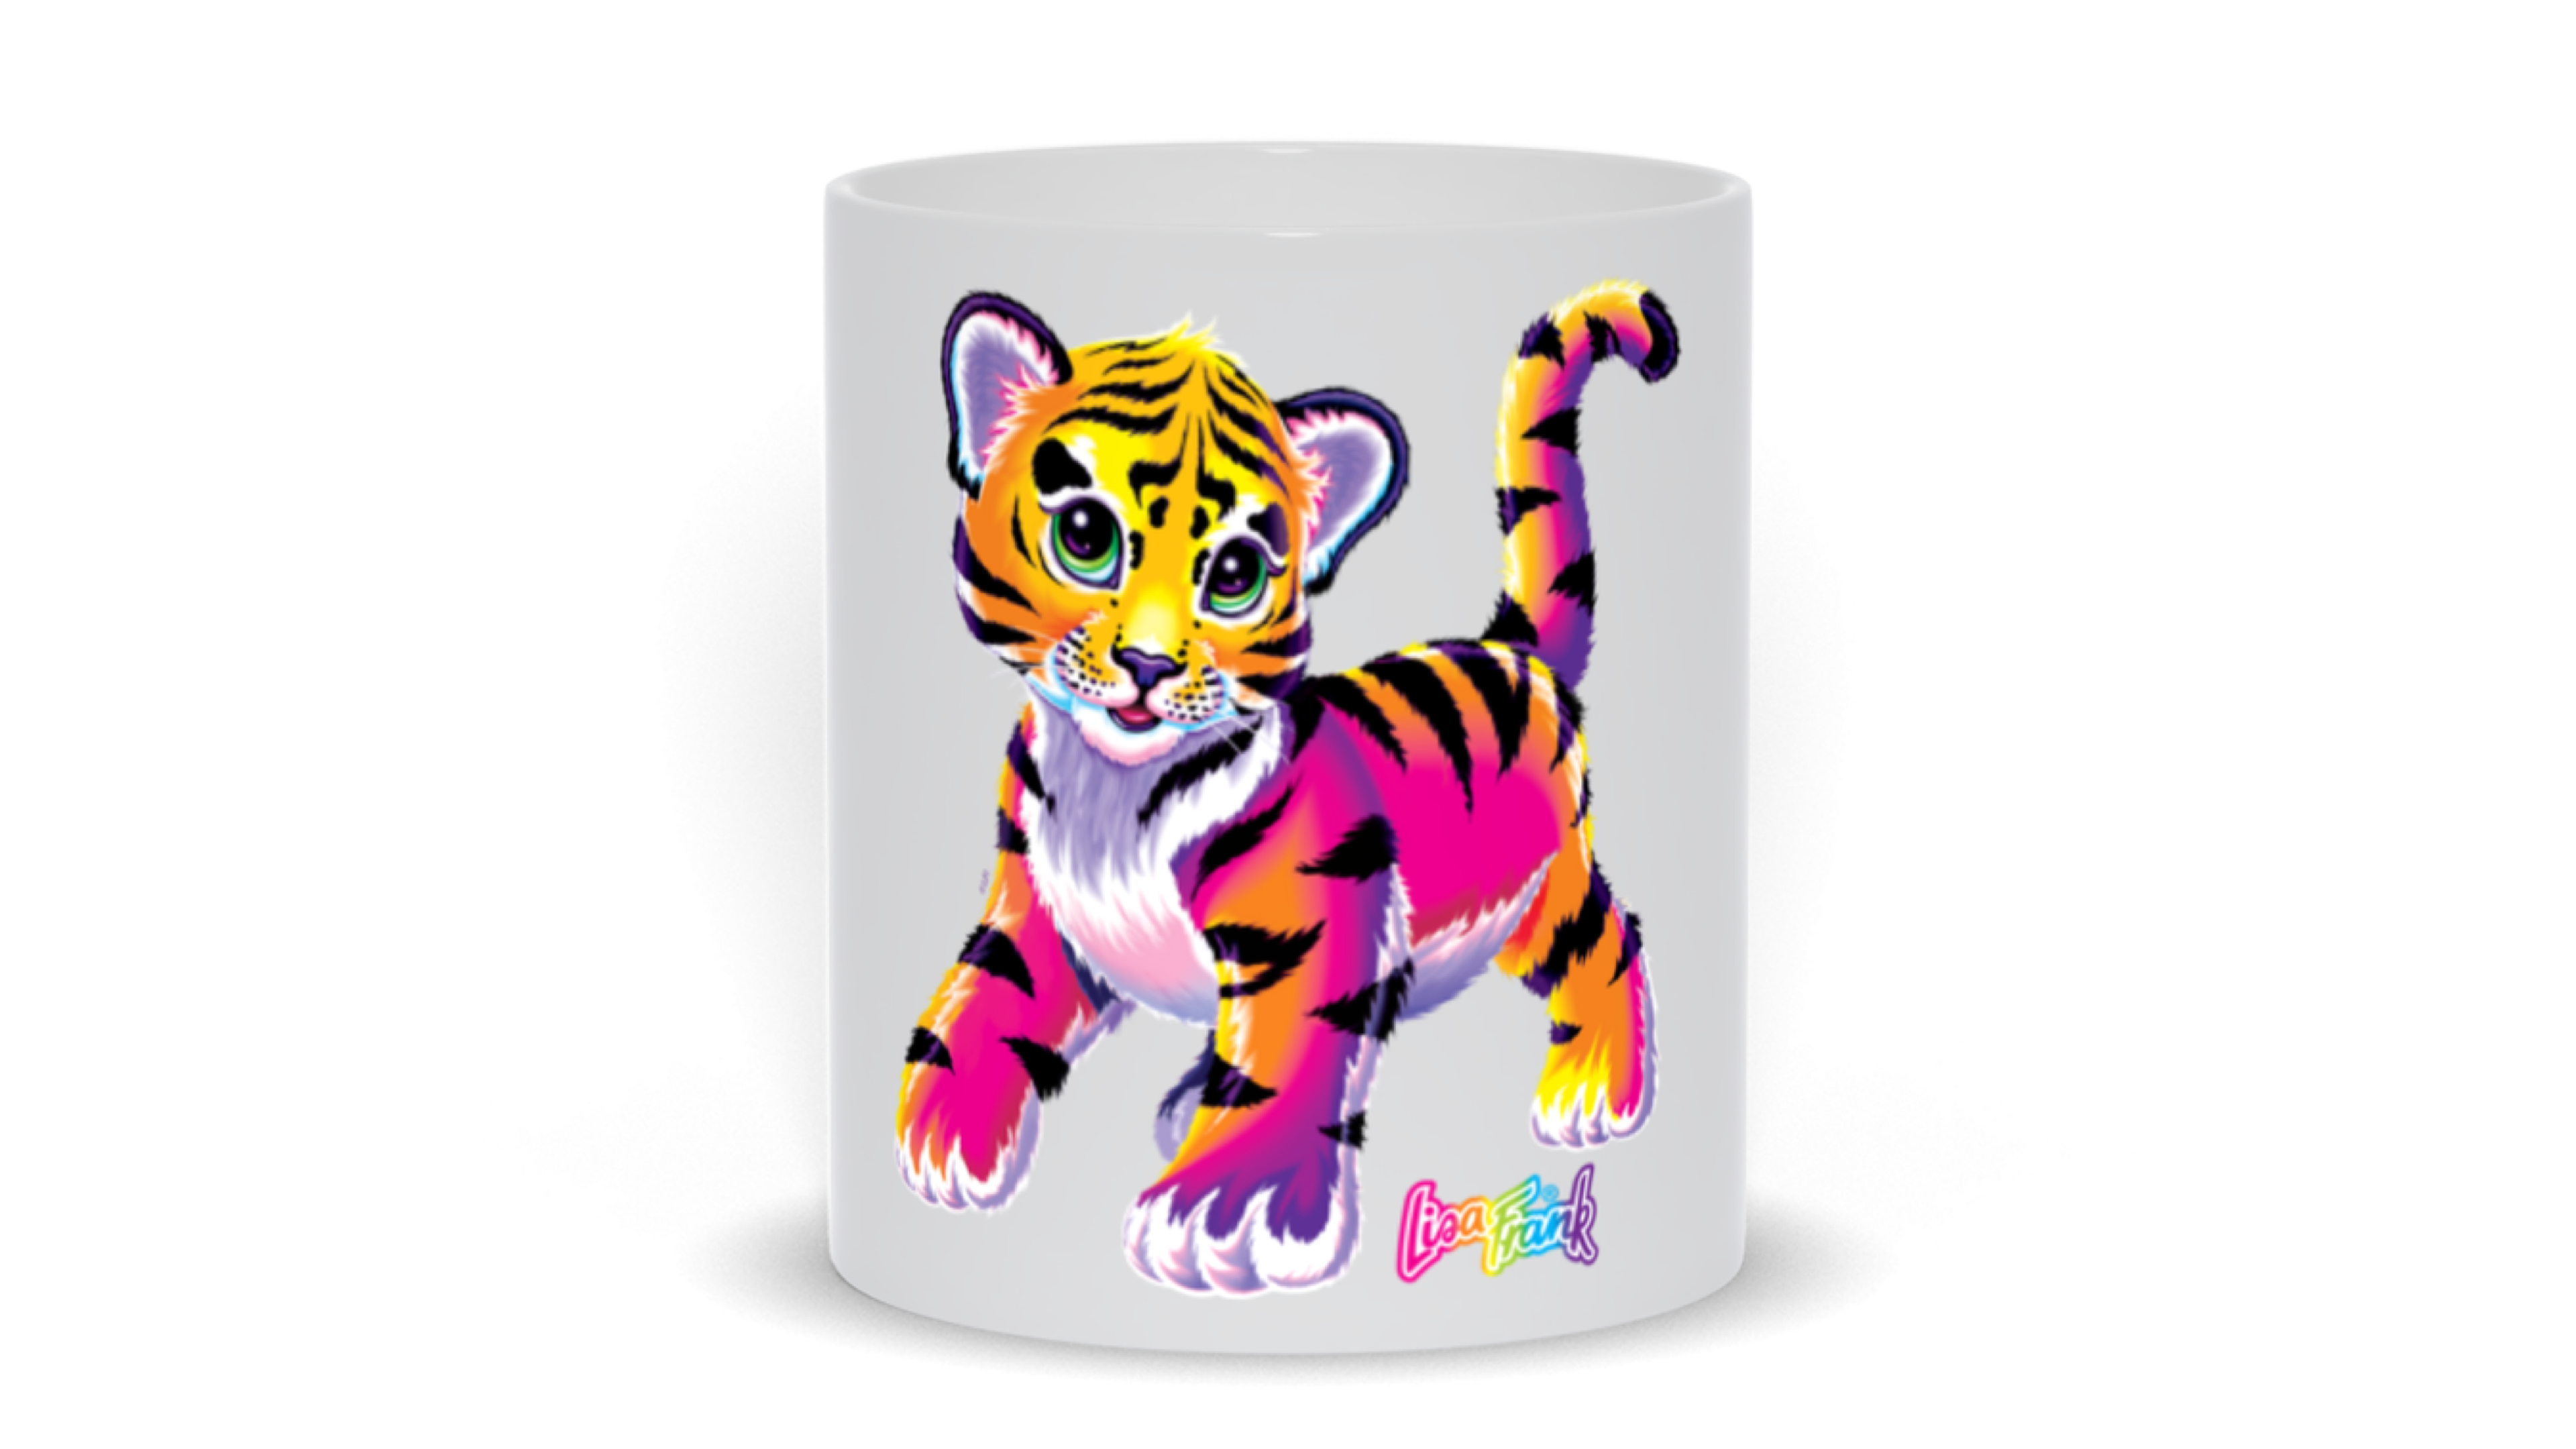 mug with lisa frank design